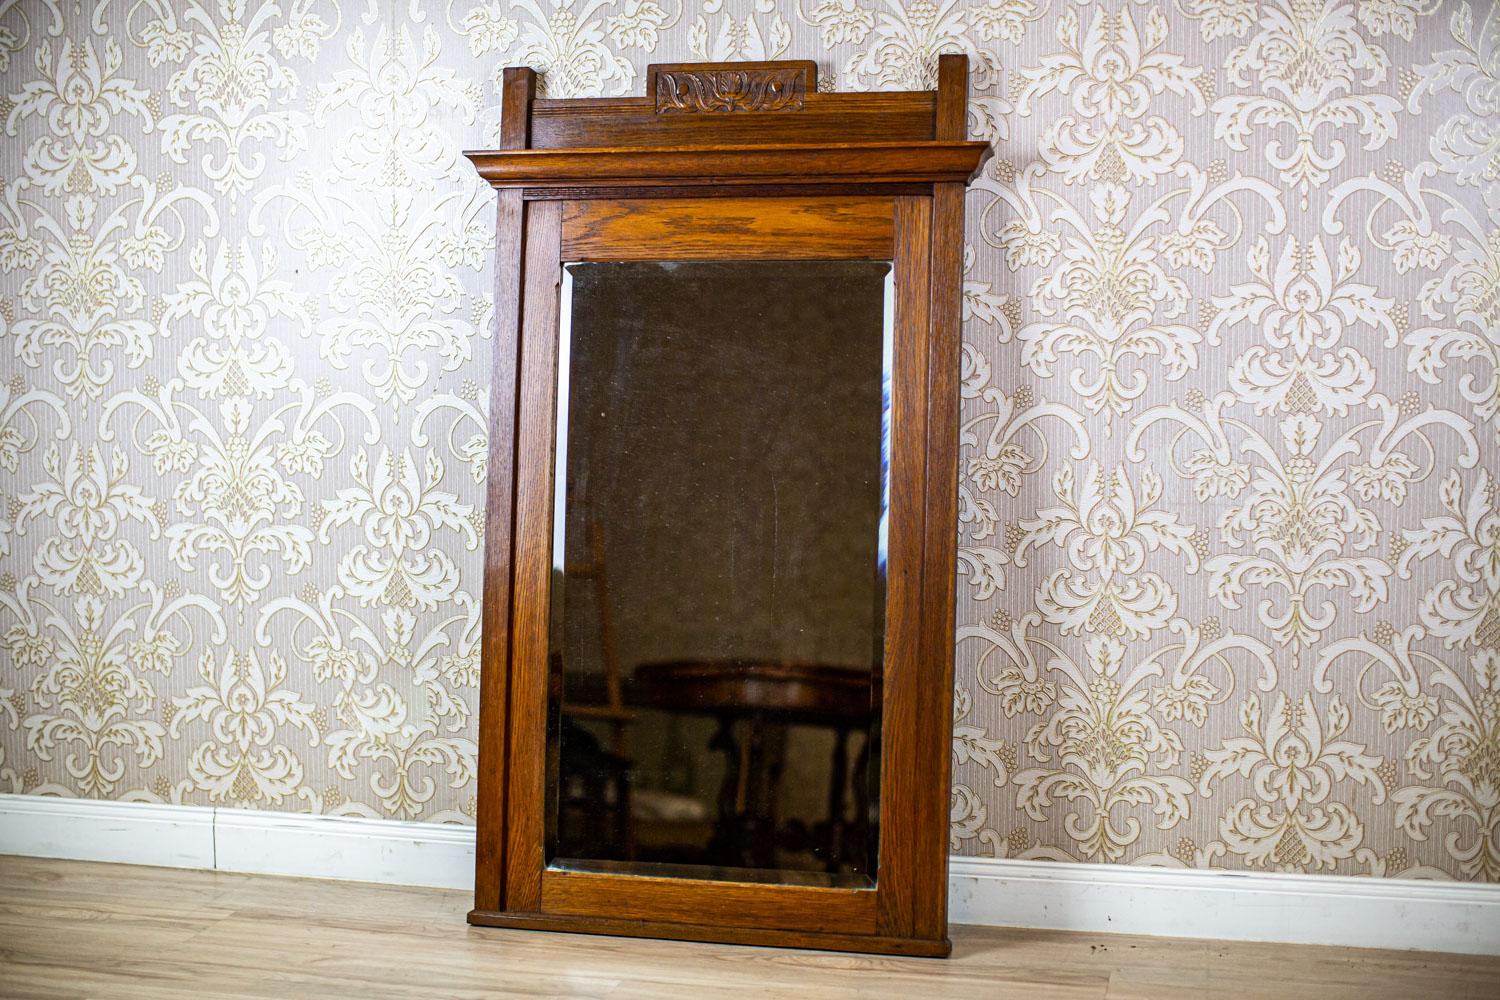 Miroir sur pied du début du 20e siècle avec cadre en chêne brun clair

Nous vous présentons ce miroir décoré avec goût et simple dans sa forme dans un cadre en chêne.
Il est daté du début du 20e siècle.
Le bois est en particulièrement bon état et